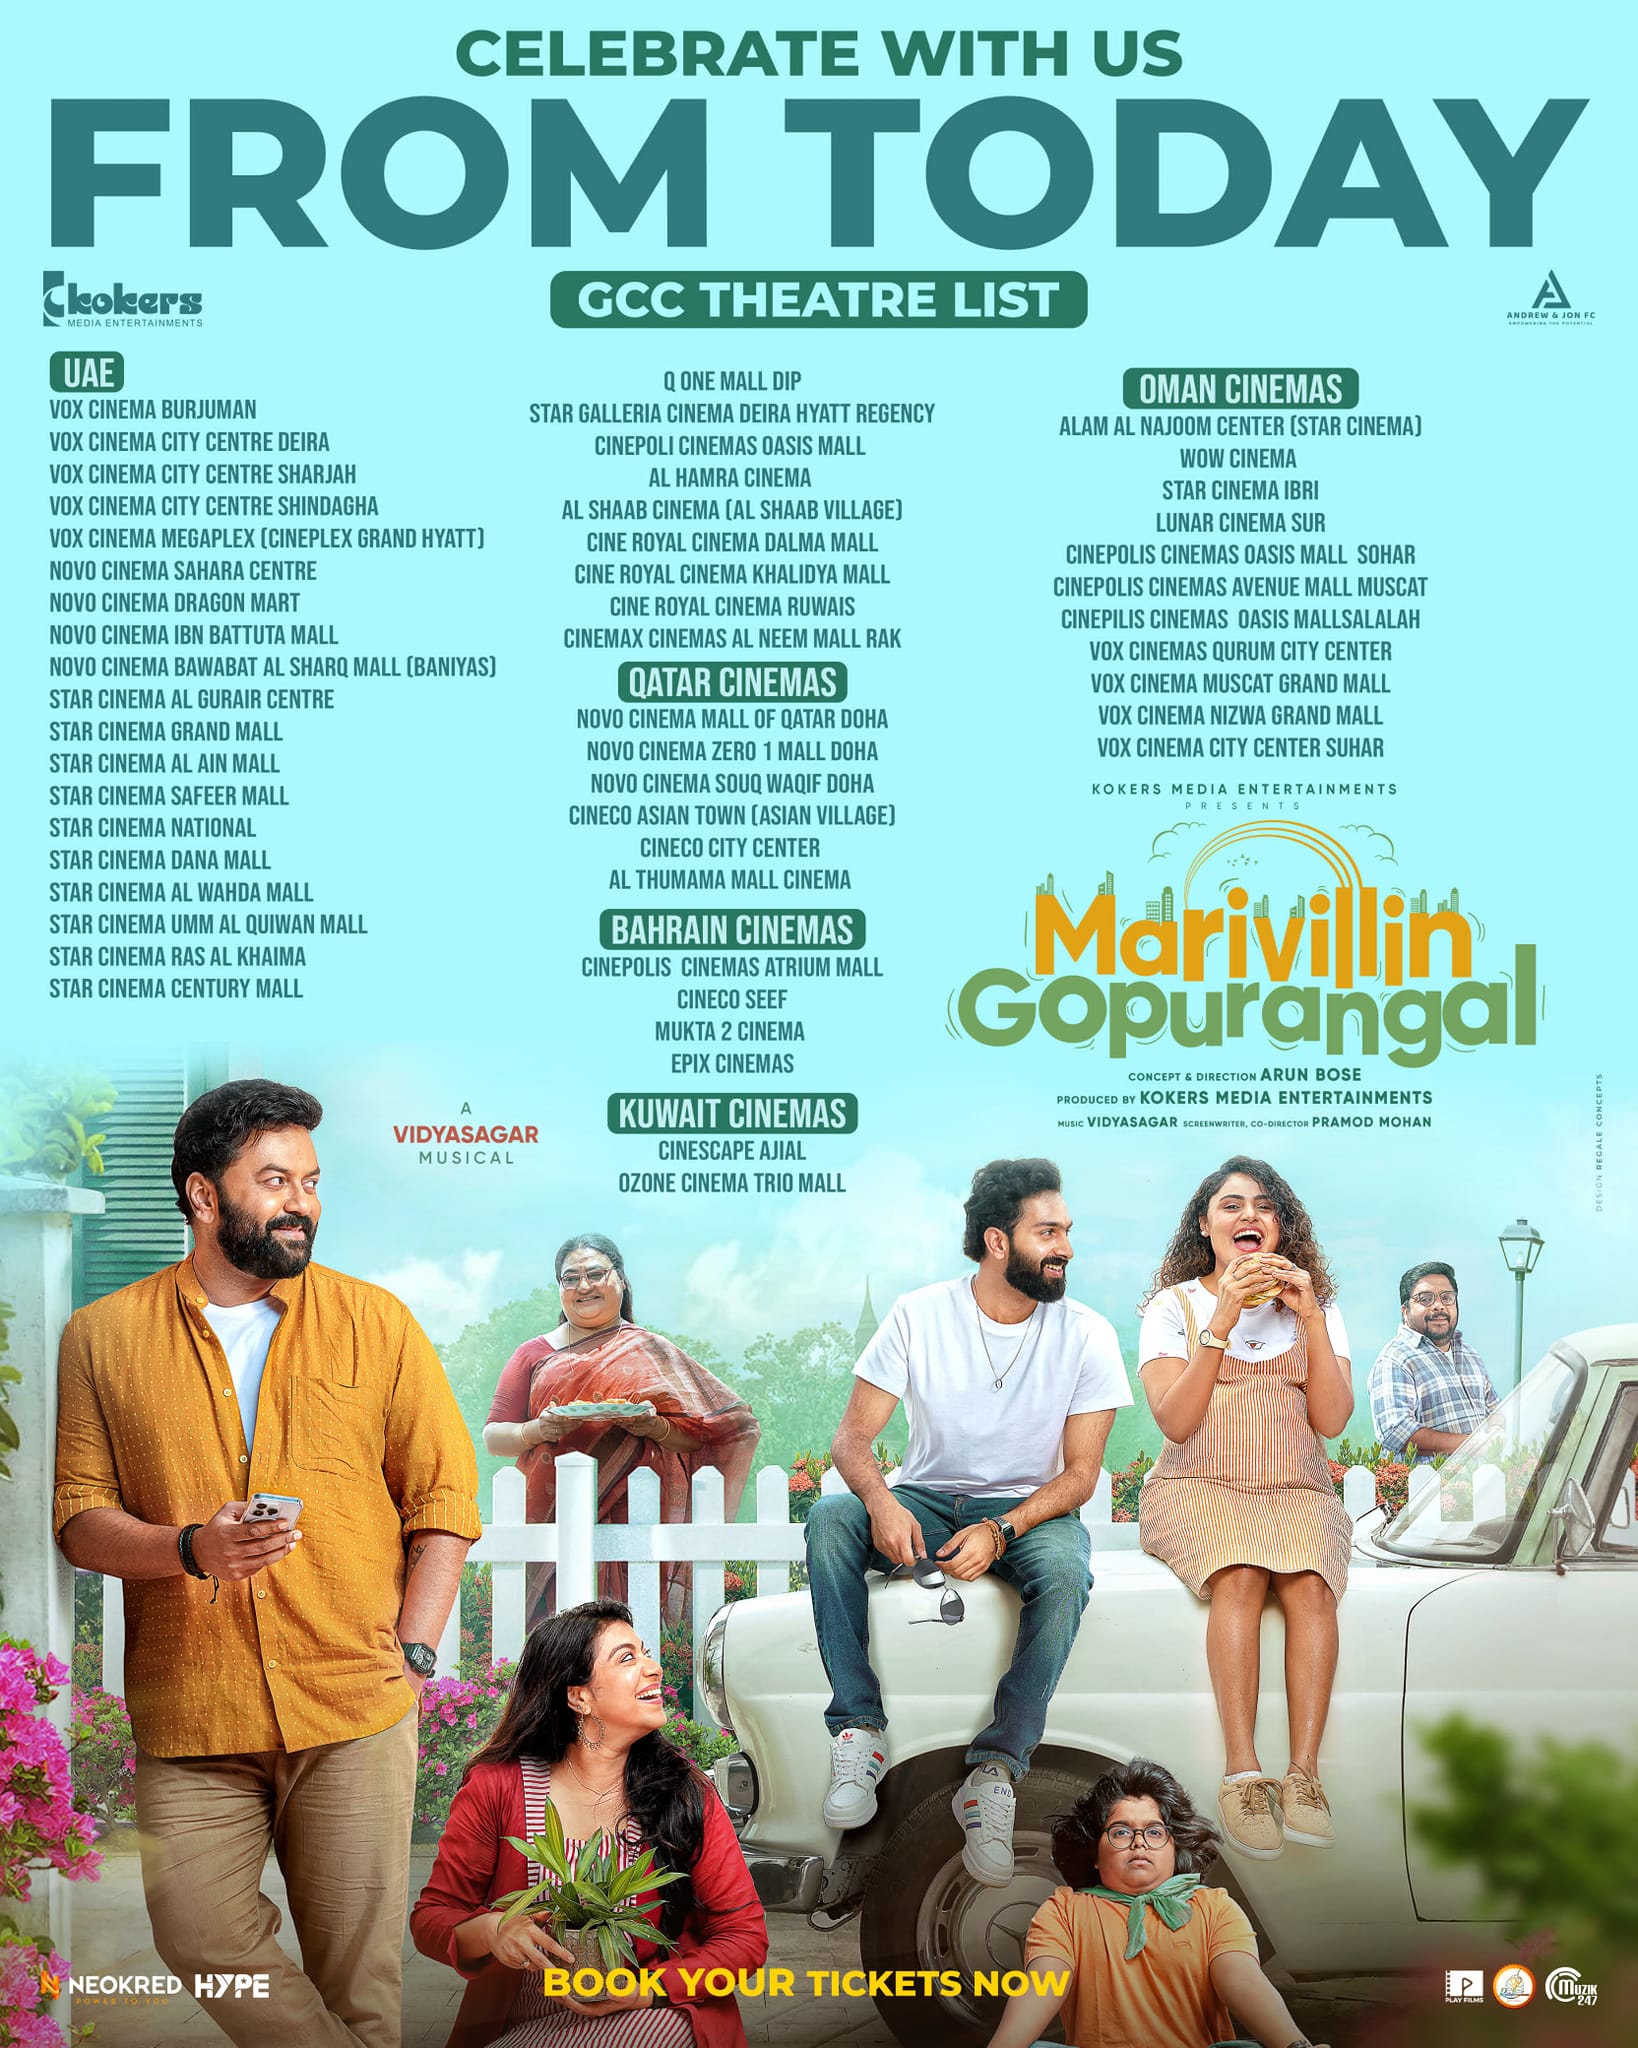 Marivillin Gopurangal movie theatre list